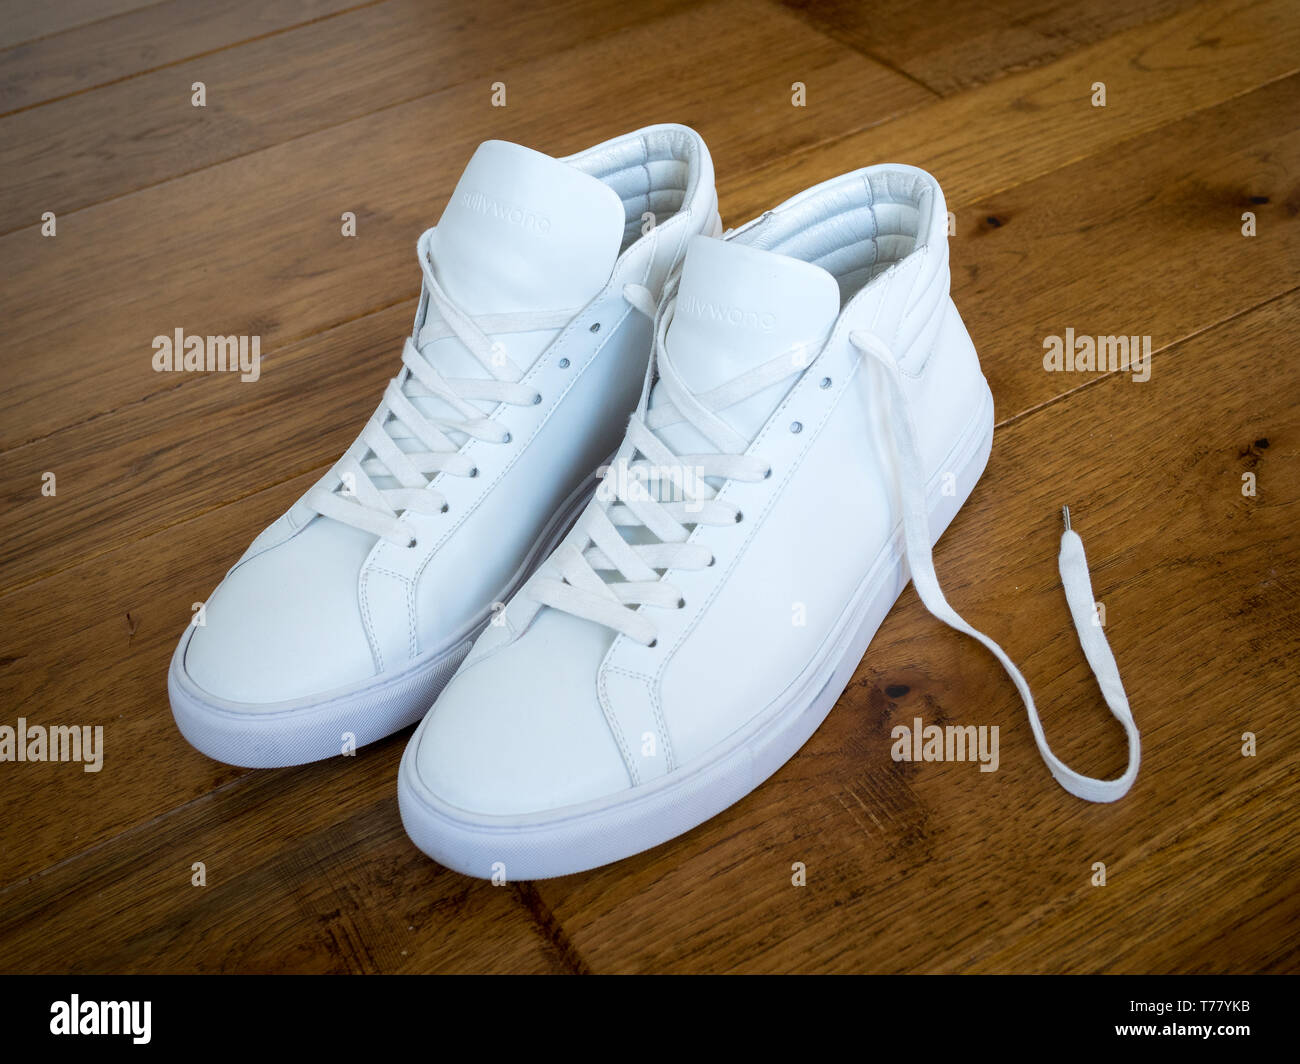 Zapatillas de deporte zapatillas deportivas blancas zapatillas